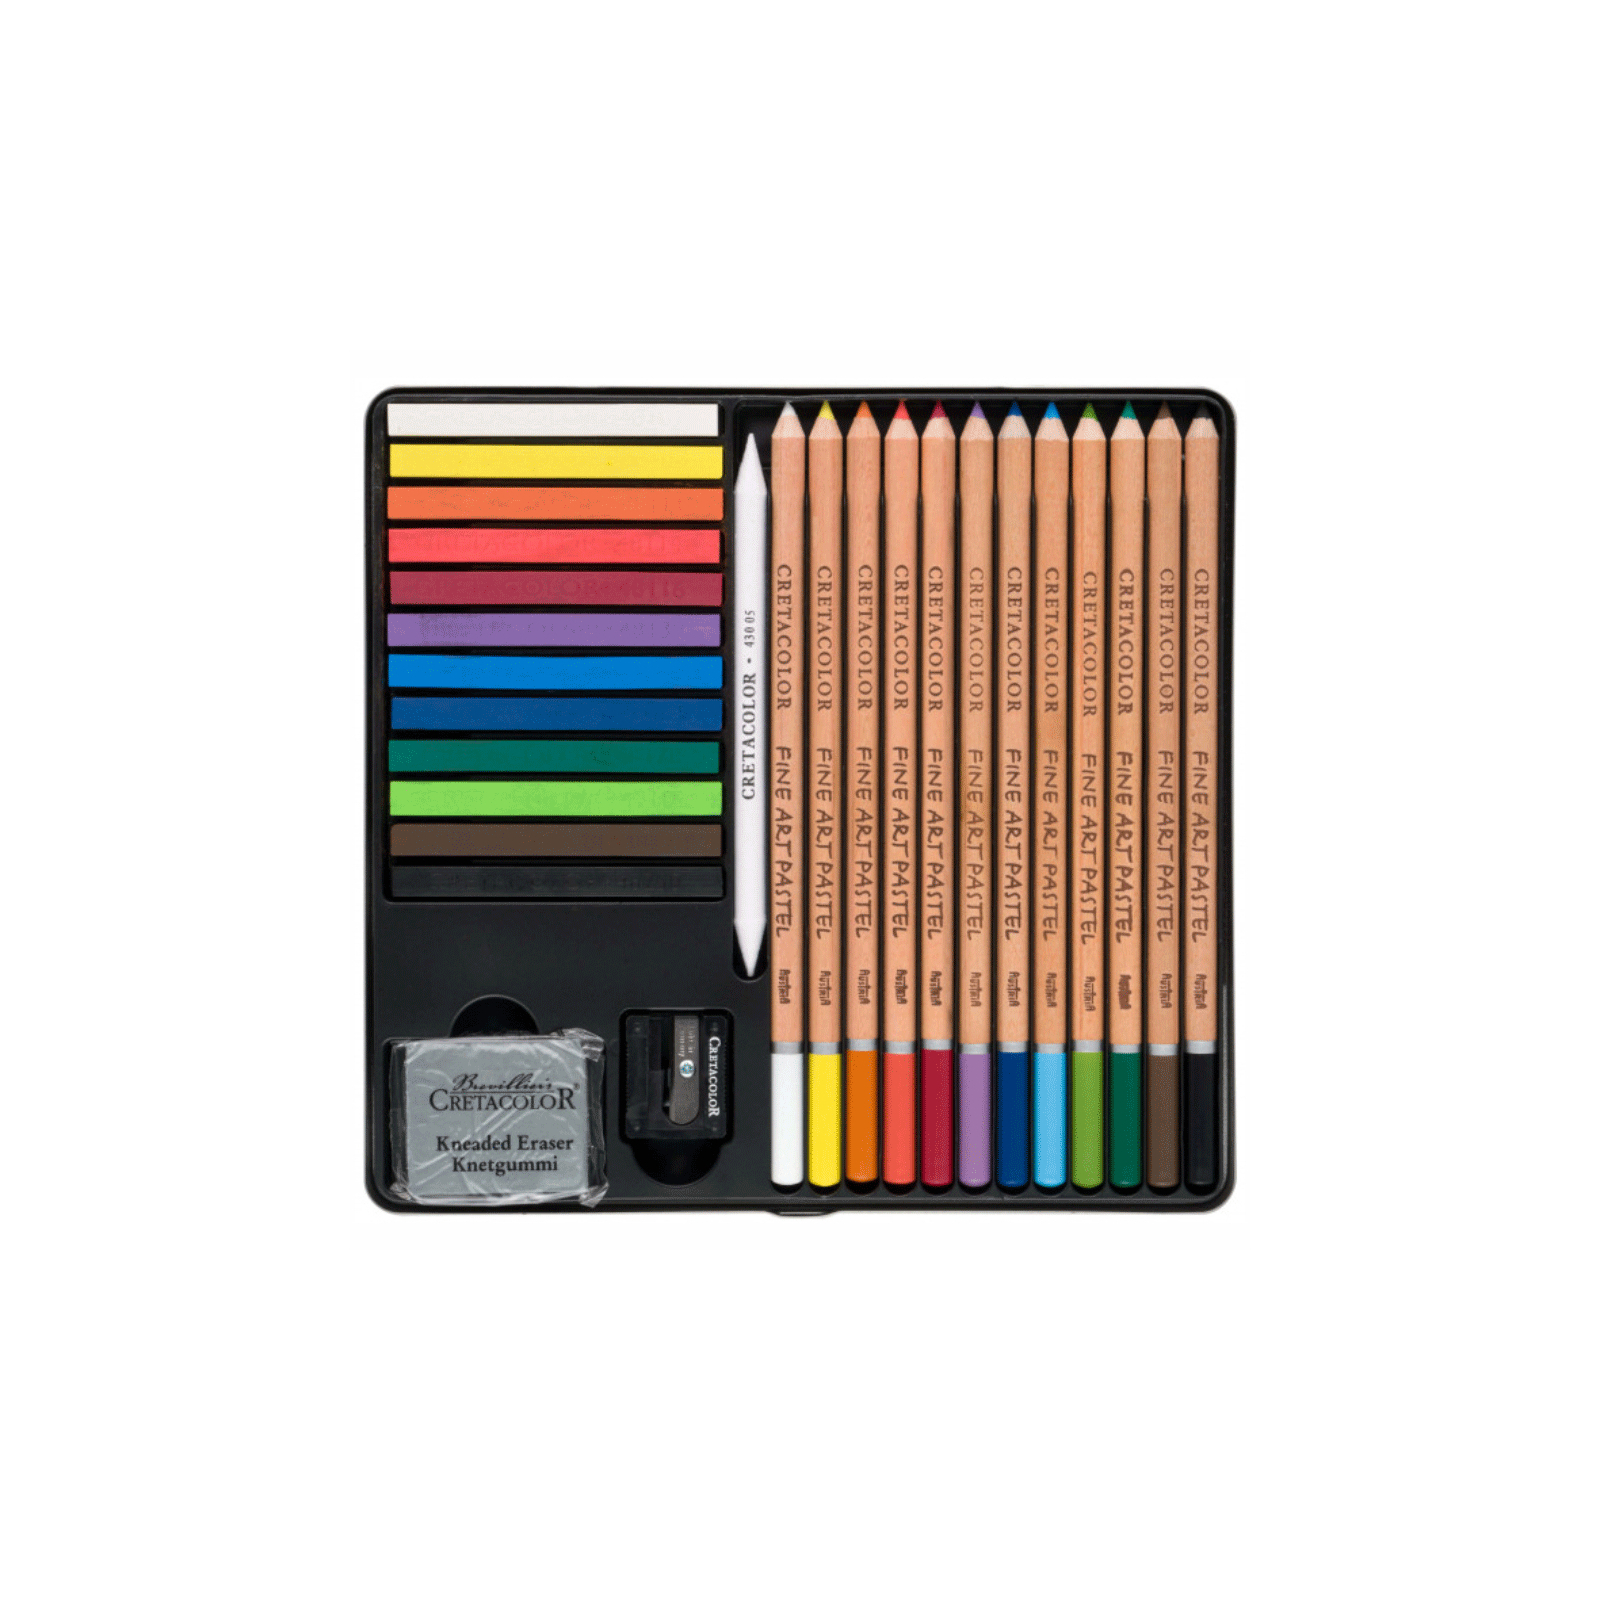 Художественный набор Cretacolor THE PASTEL BASIC BOX, пастели и карандашей 27 предметов (9014400325190) изображение 2